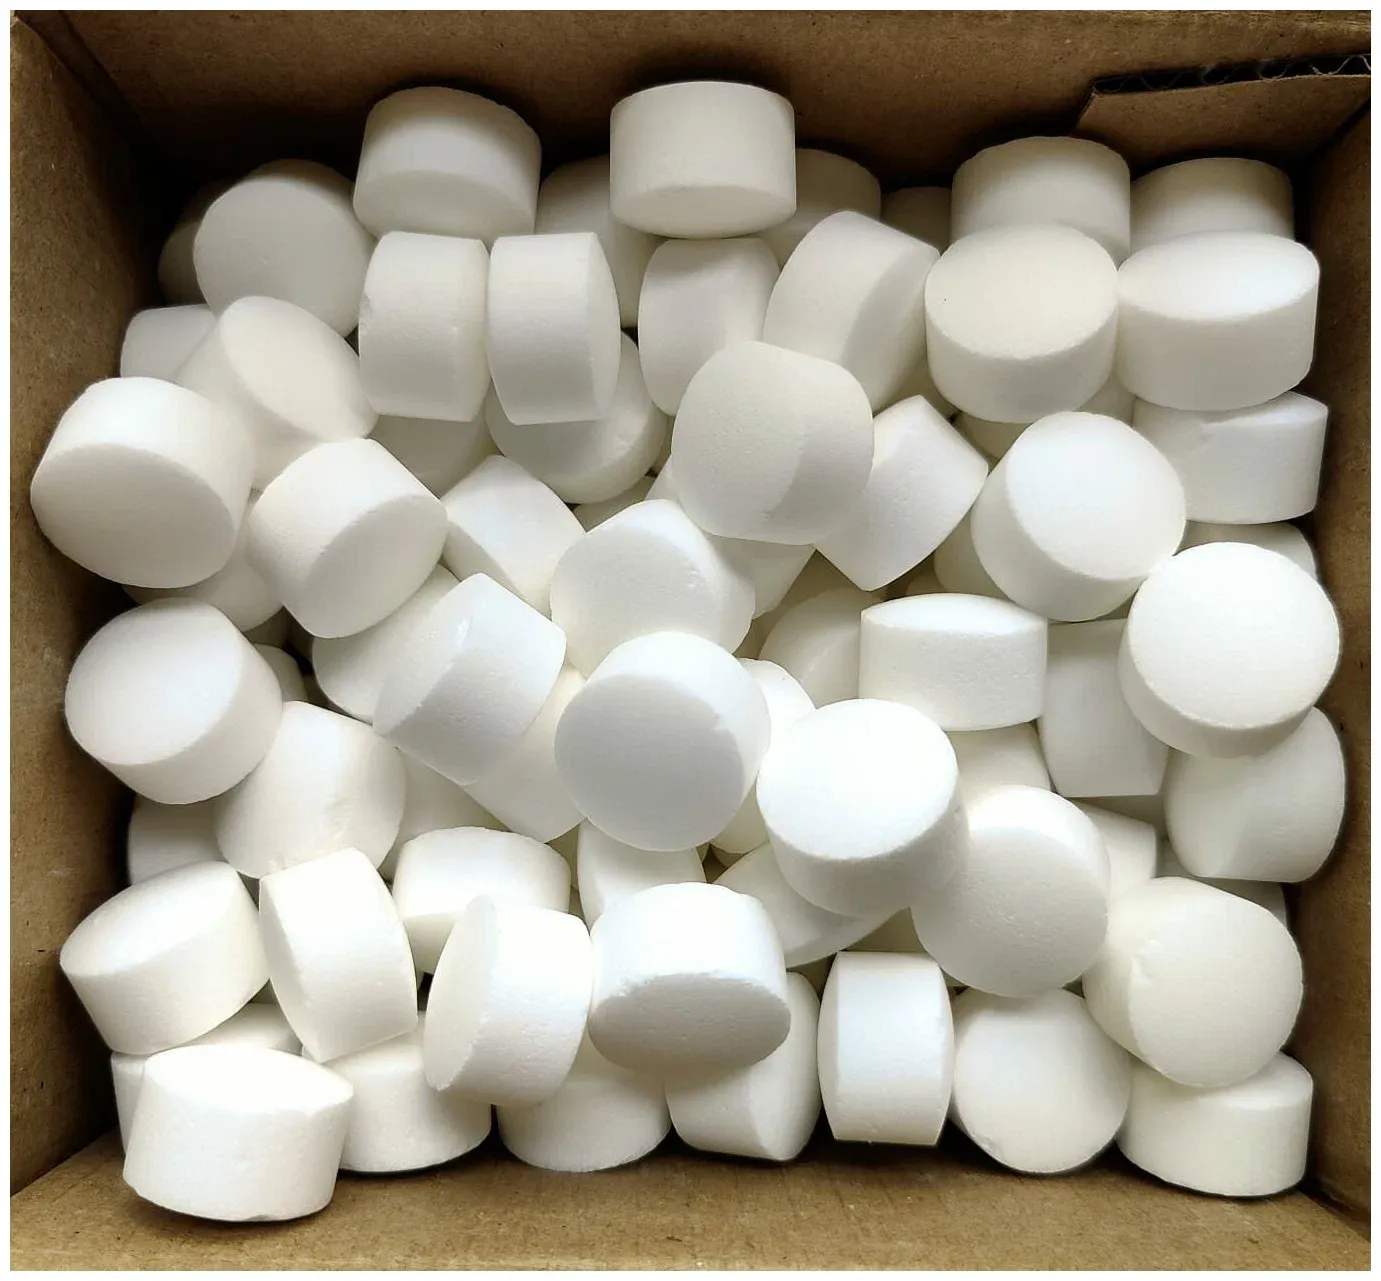 Соль таблетированная «Универсальная» по ТУ РБ 400087365.003-2002 из сырья по ГОСТ Р 51574-2018 в мешках по 25 кг